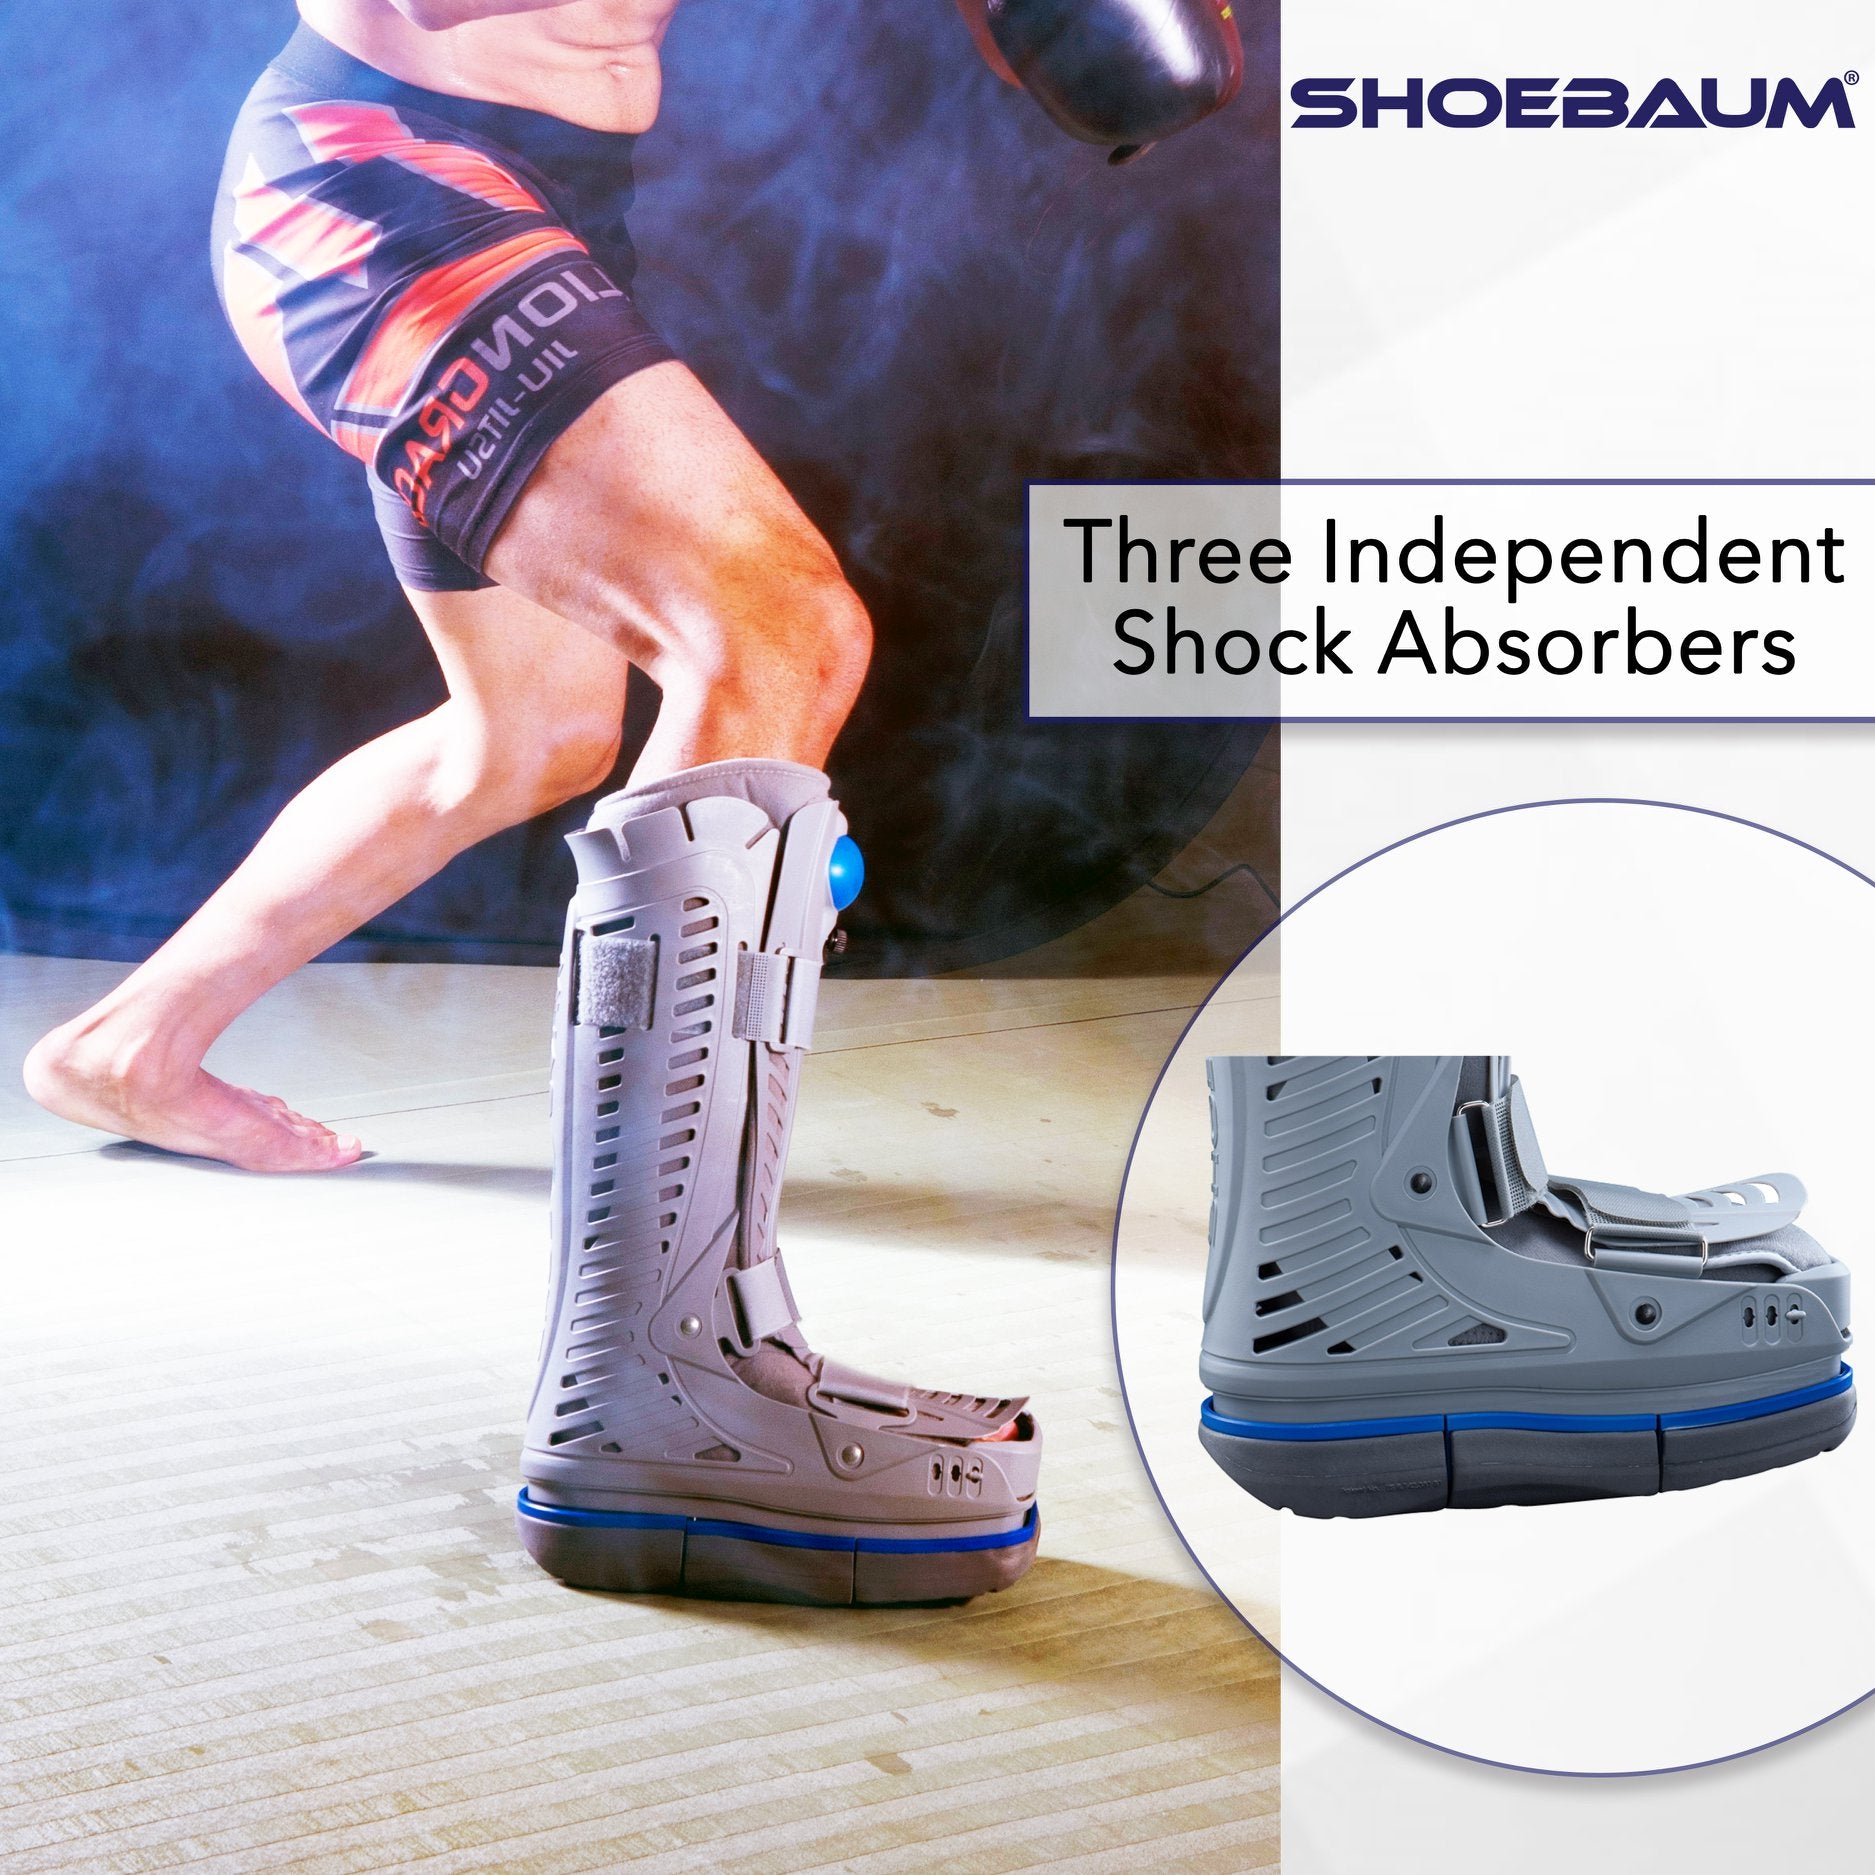 Shoebaum Injury Boot